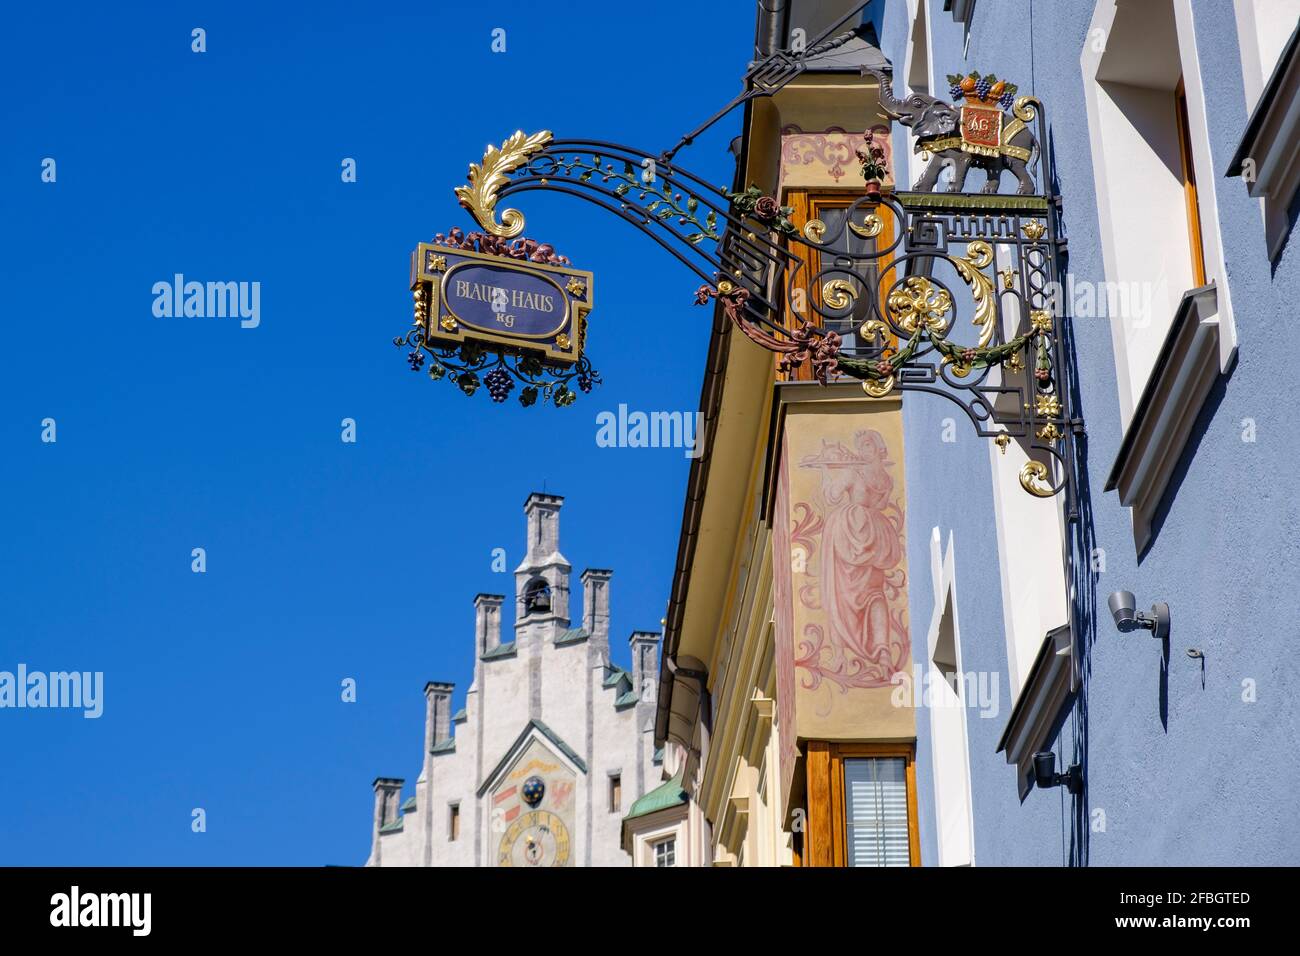 Schild am Blauen Haus, Schwaz, Tirol, Österreich Stockfoto